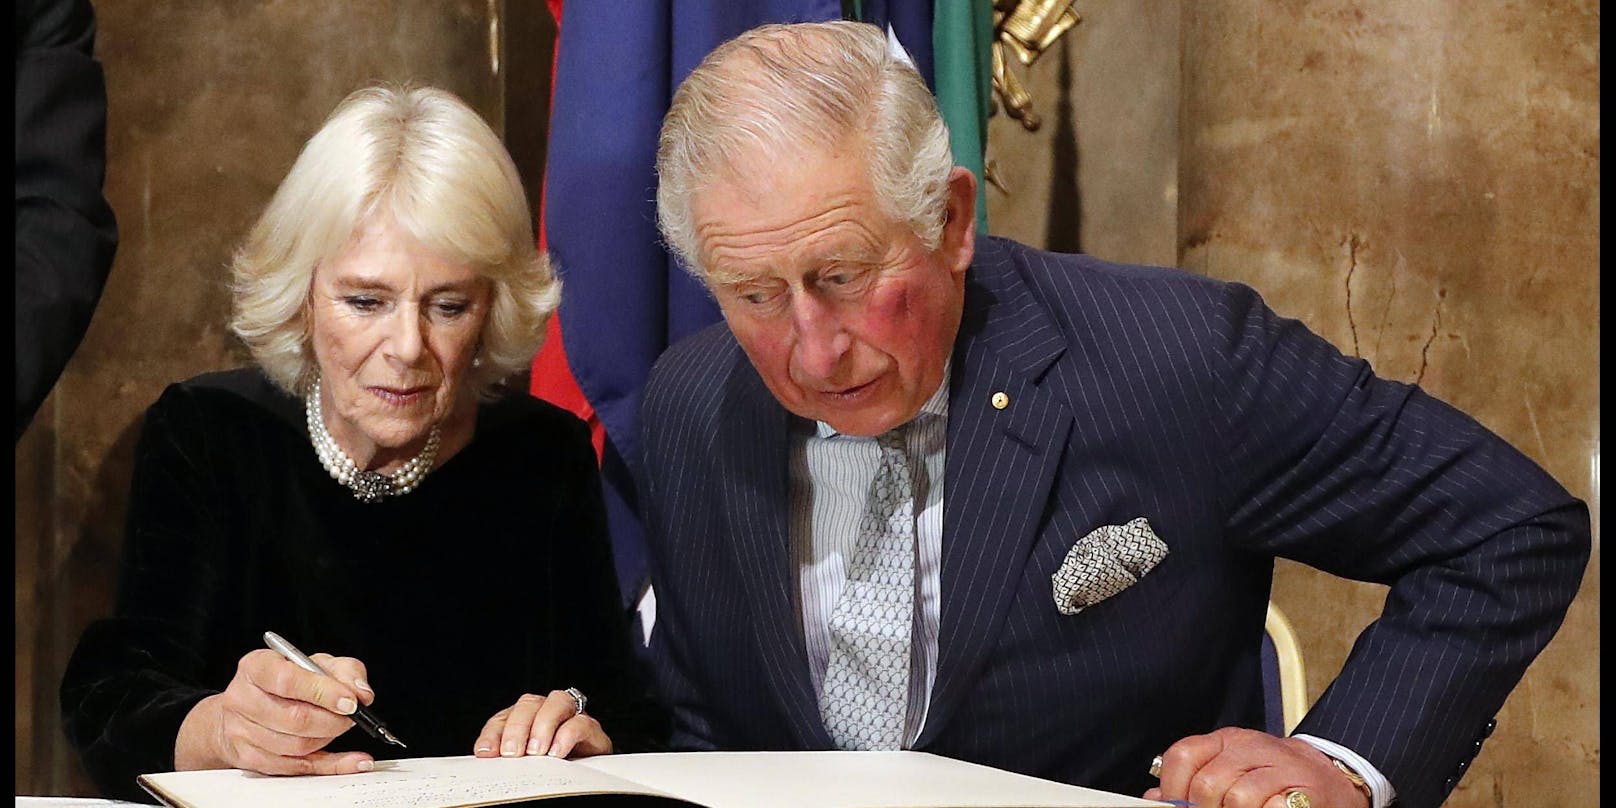 Charles liest sich immer alles genau durch, bevor er und seine Frau etwas unterschreiben.